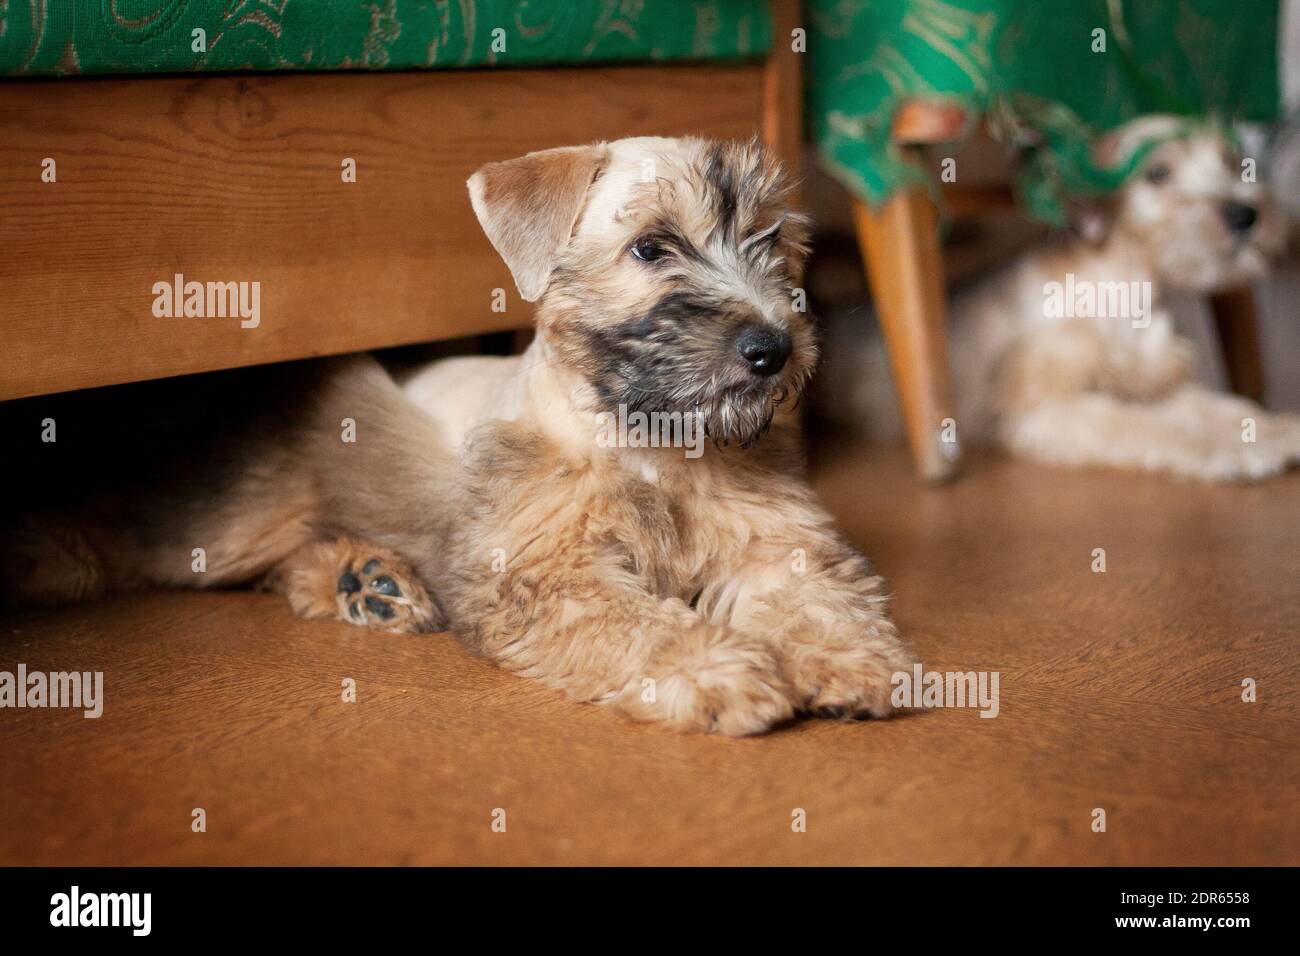 Irish Soft Coated Wheaten Terrier est une race de chien. Il diffère des autres terriers irlandais en laine - soyeux, doux, couleur unique de blé. C'est un fort, Banque D'Images